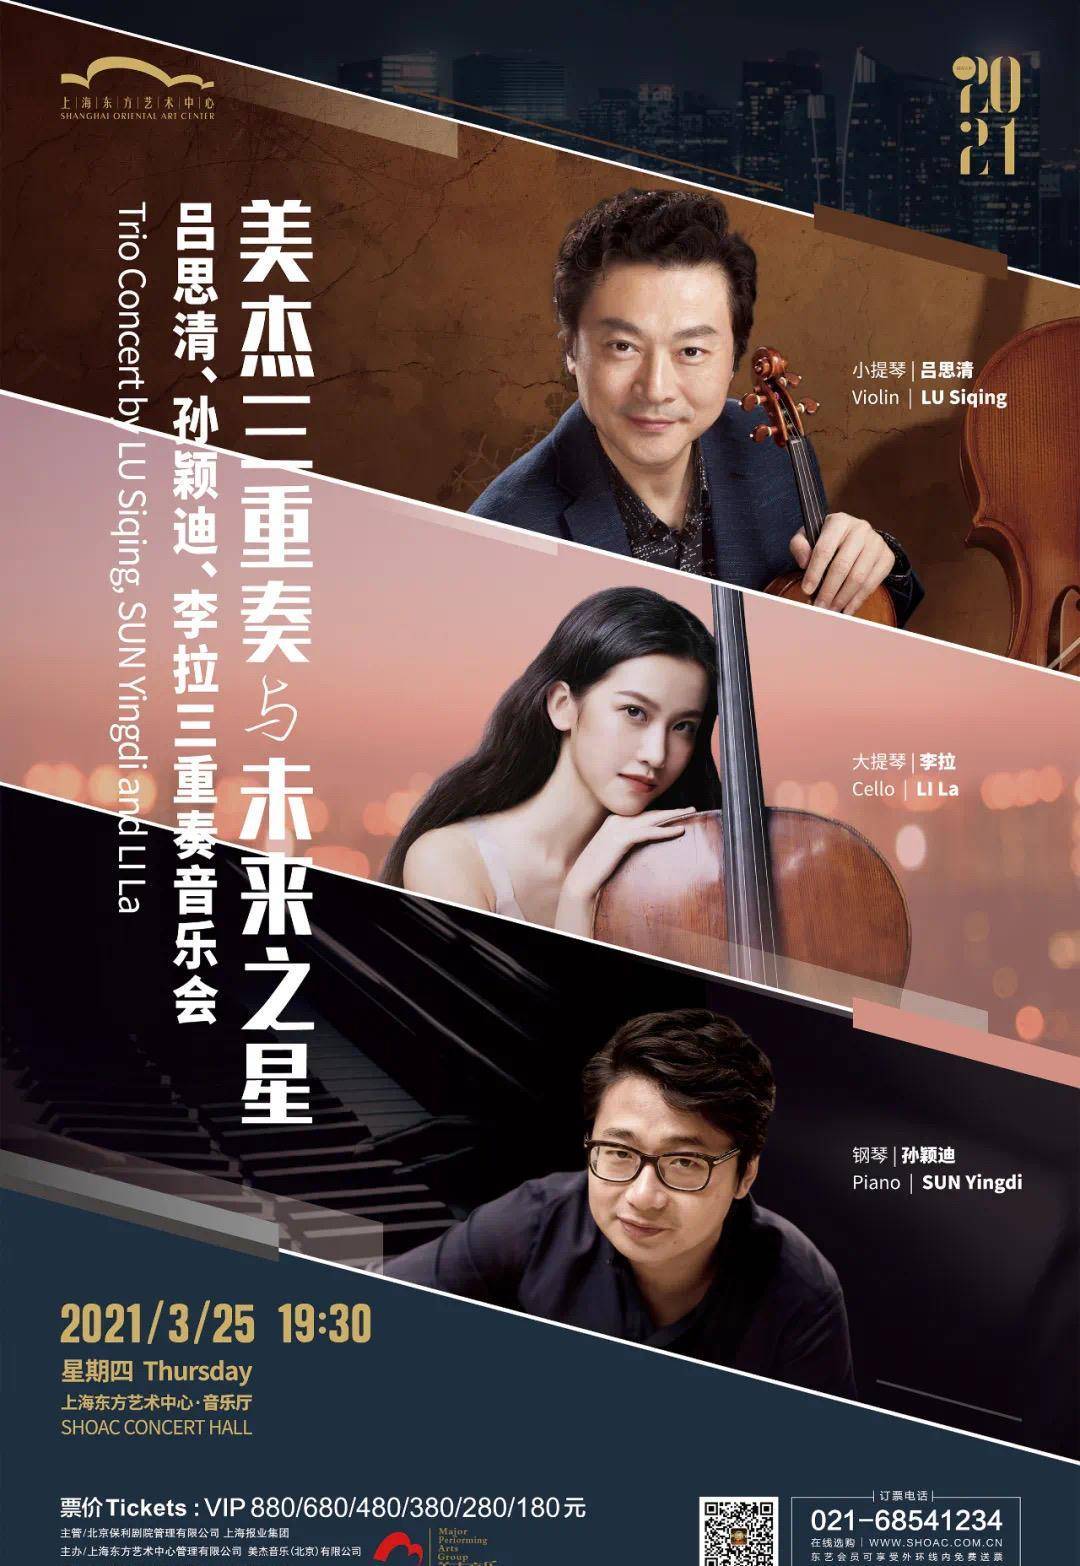 10年前,孙红雷主演的电视剧《男人帮》热播,吕思清,孙颖迪和大提琴家